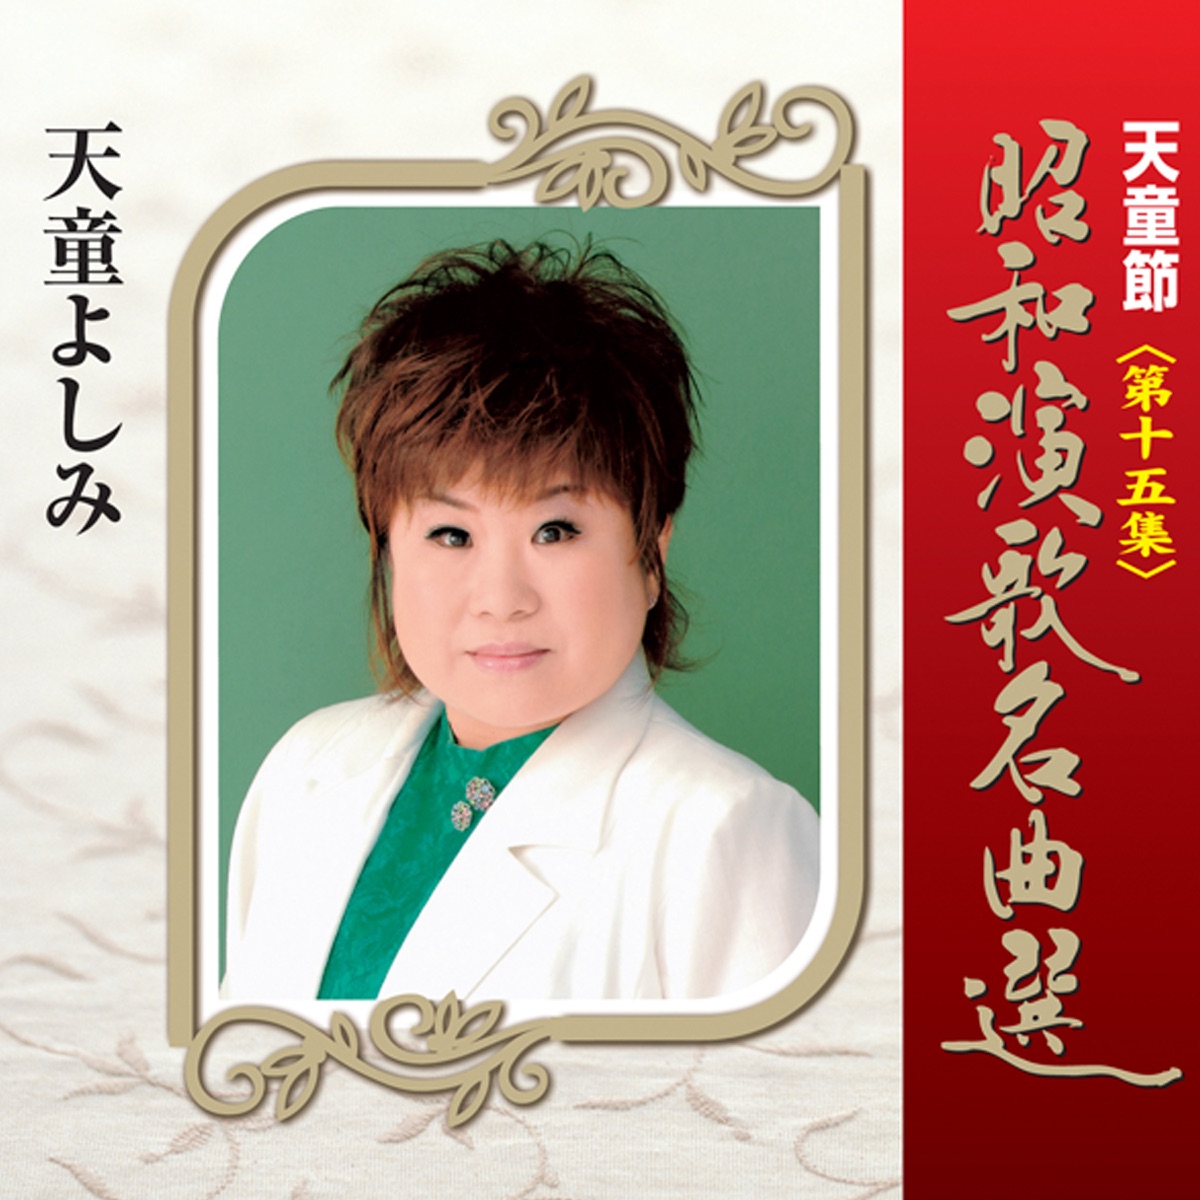 ‎天童節 昭和演歌名曲選 第一集 - Album by Yoshimi Tendo - Apple 